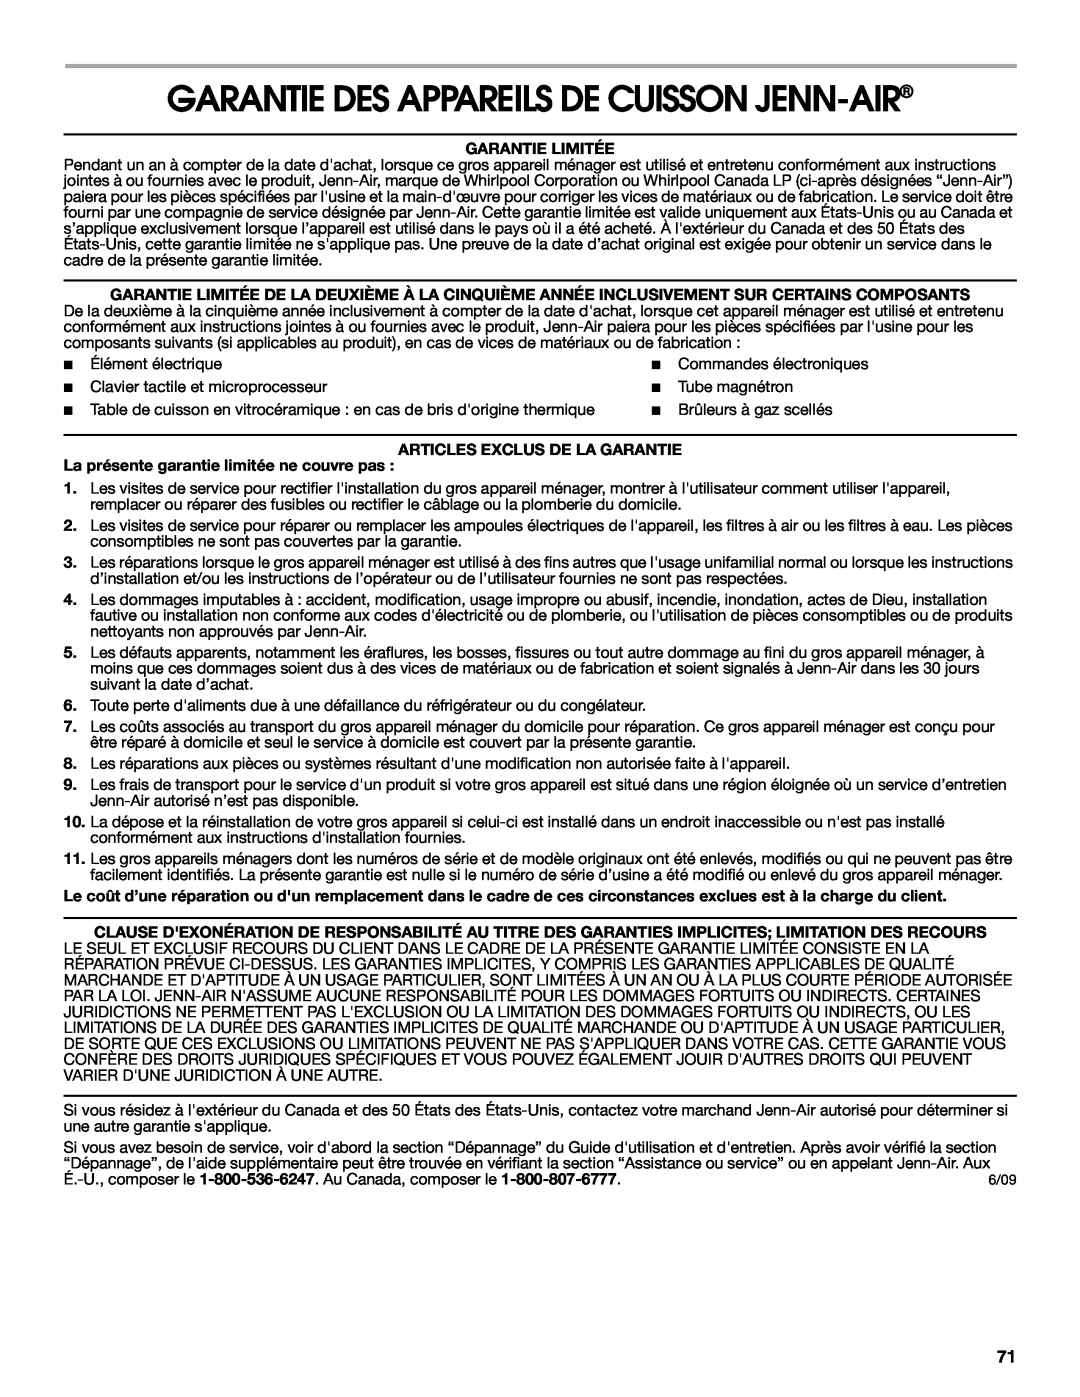 Jenn-Air JDRP548, JDRP436 Garantie Des Appareils De Cuisson Jenn-Air, Garantie Limitée, Articles Exclus De La Garantie 